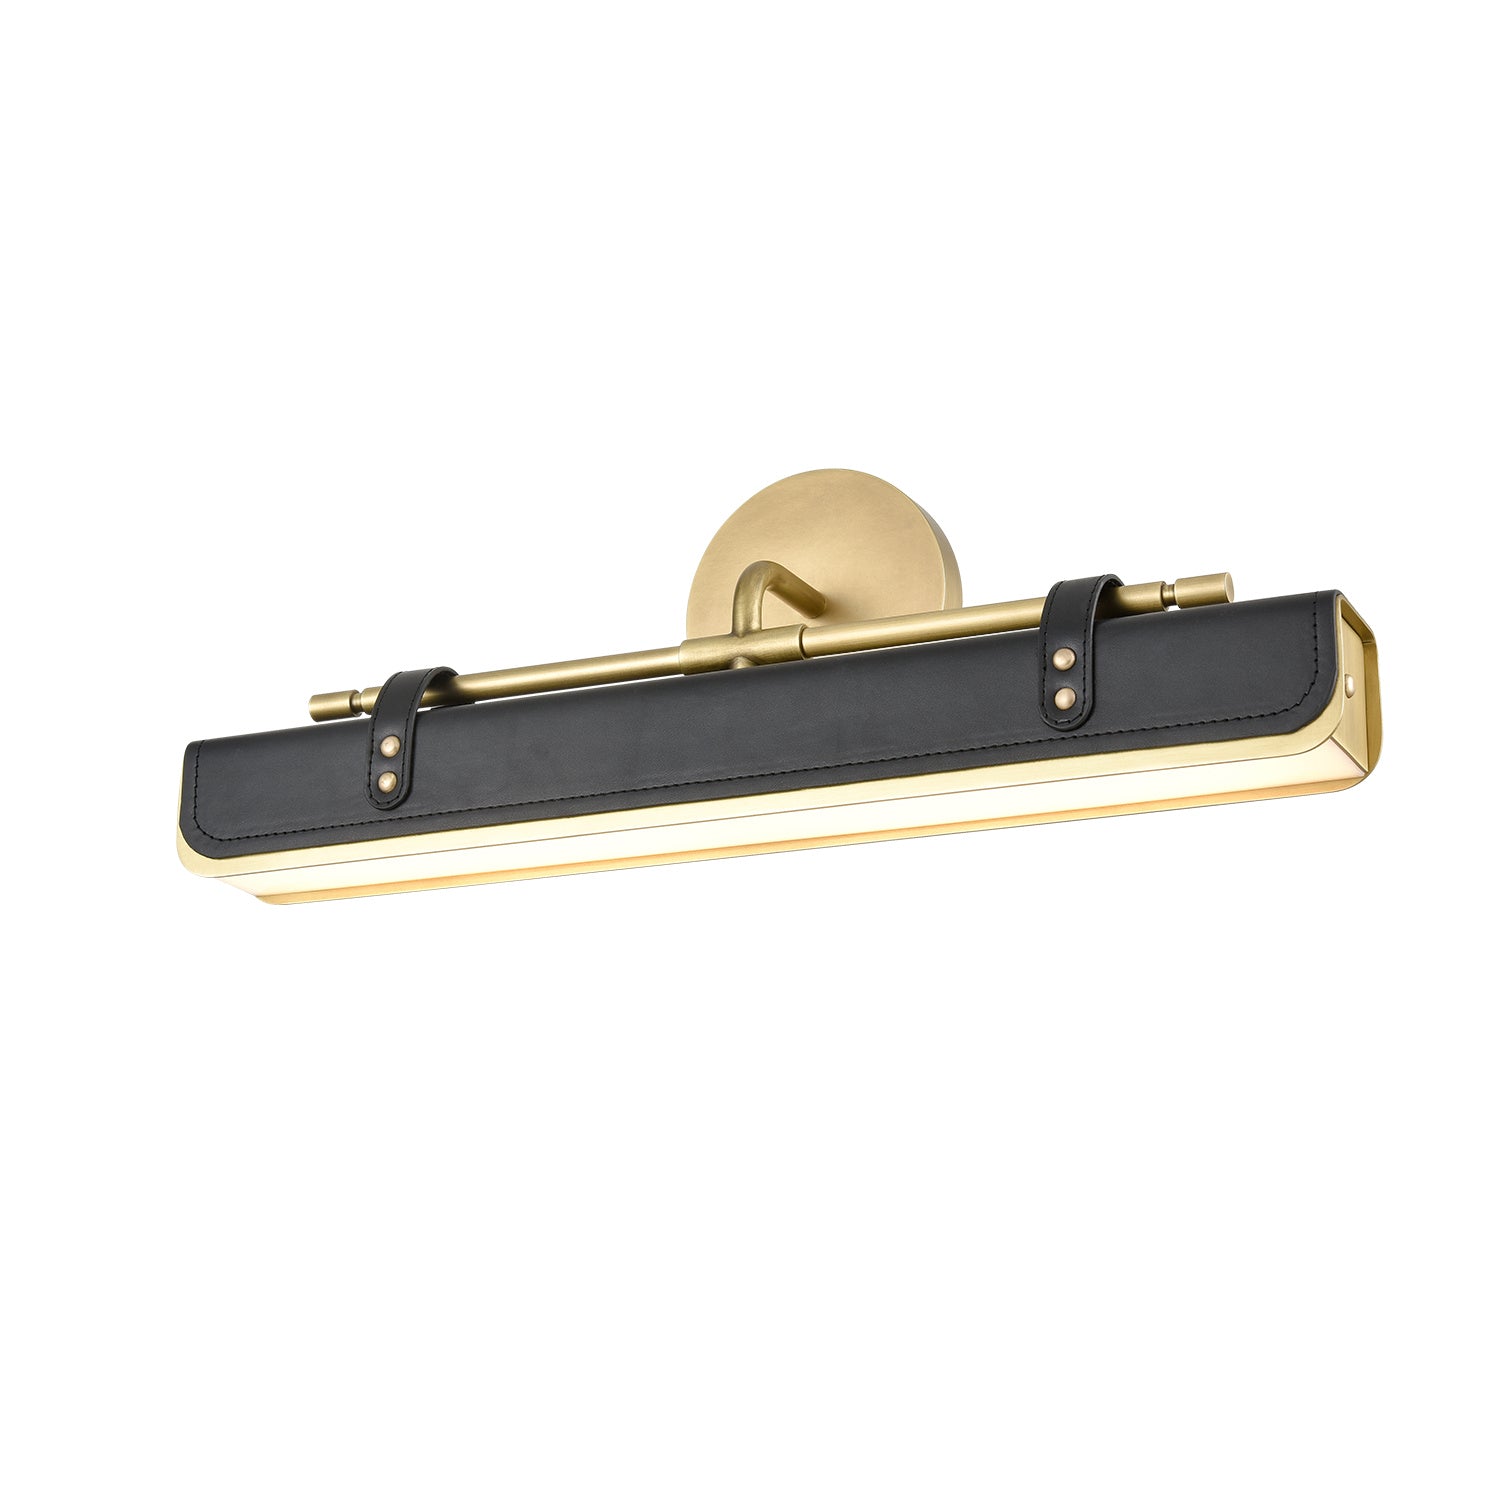 Alora Canada - LED Wall Sconce - Valise - Vintage Brass/Tuxedo Leather- Union Lighting Luminaires Decor